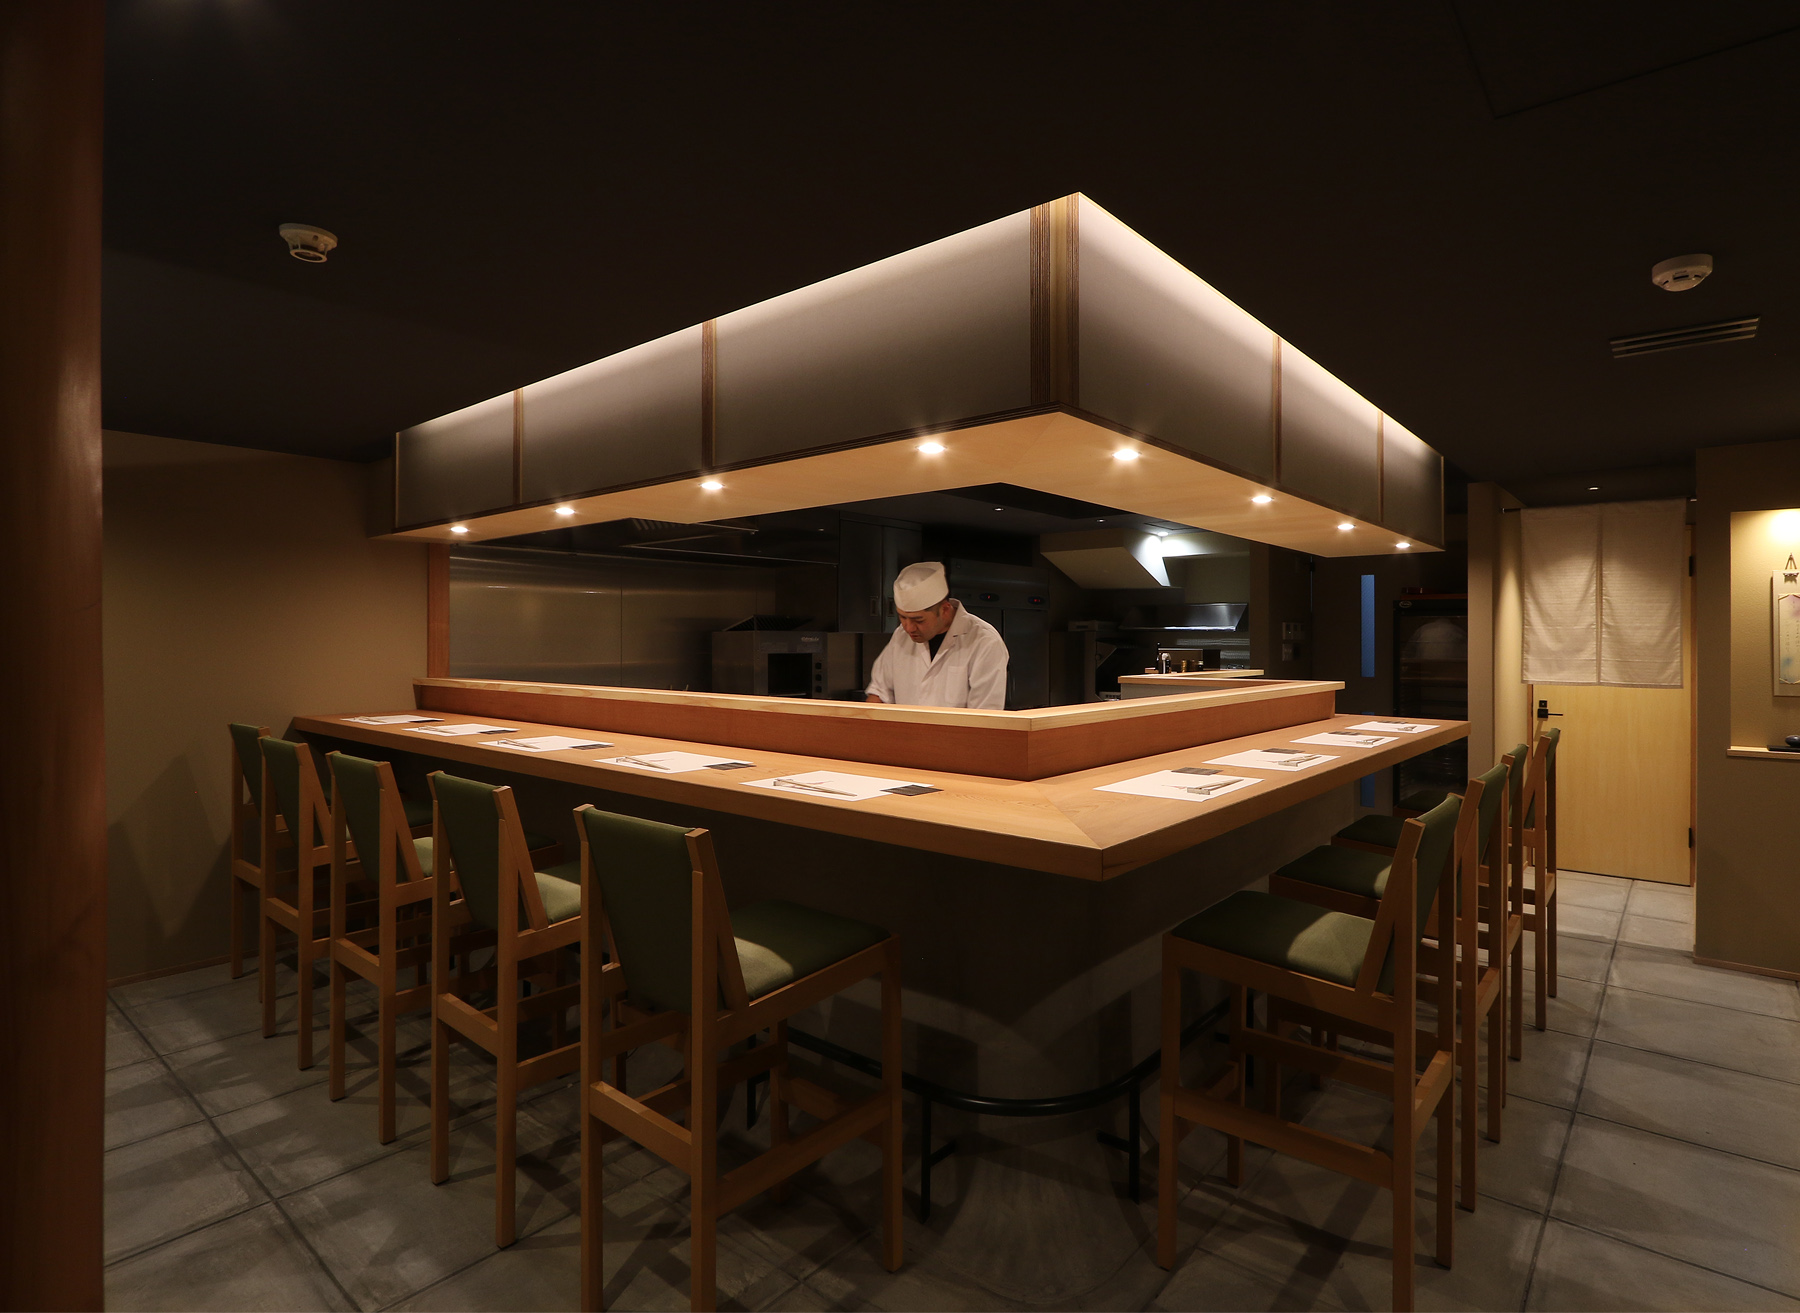 京都 店舗デザイン 店舗リノベーション 店舗改装 割烹 日本料理 和食 カウンター席のみの店内 カジュアルモダン